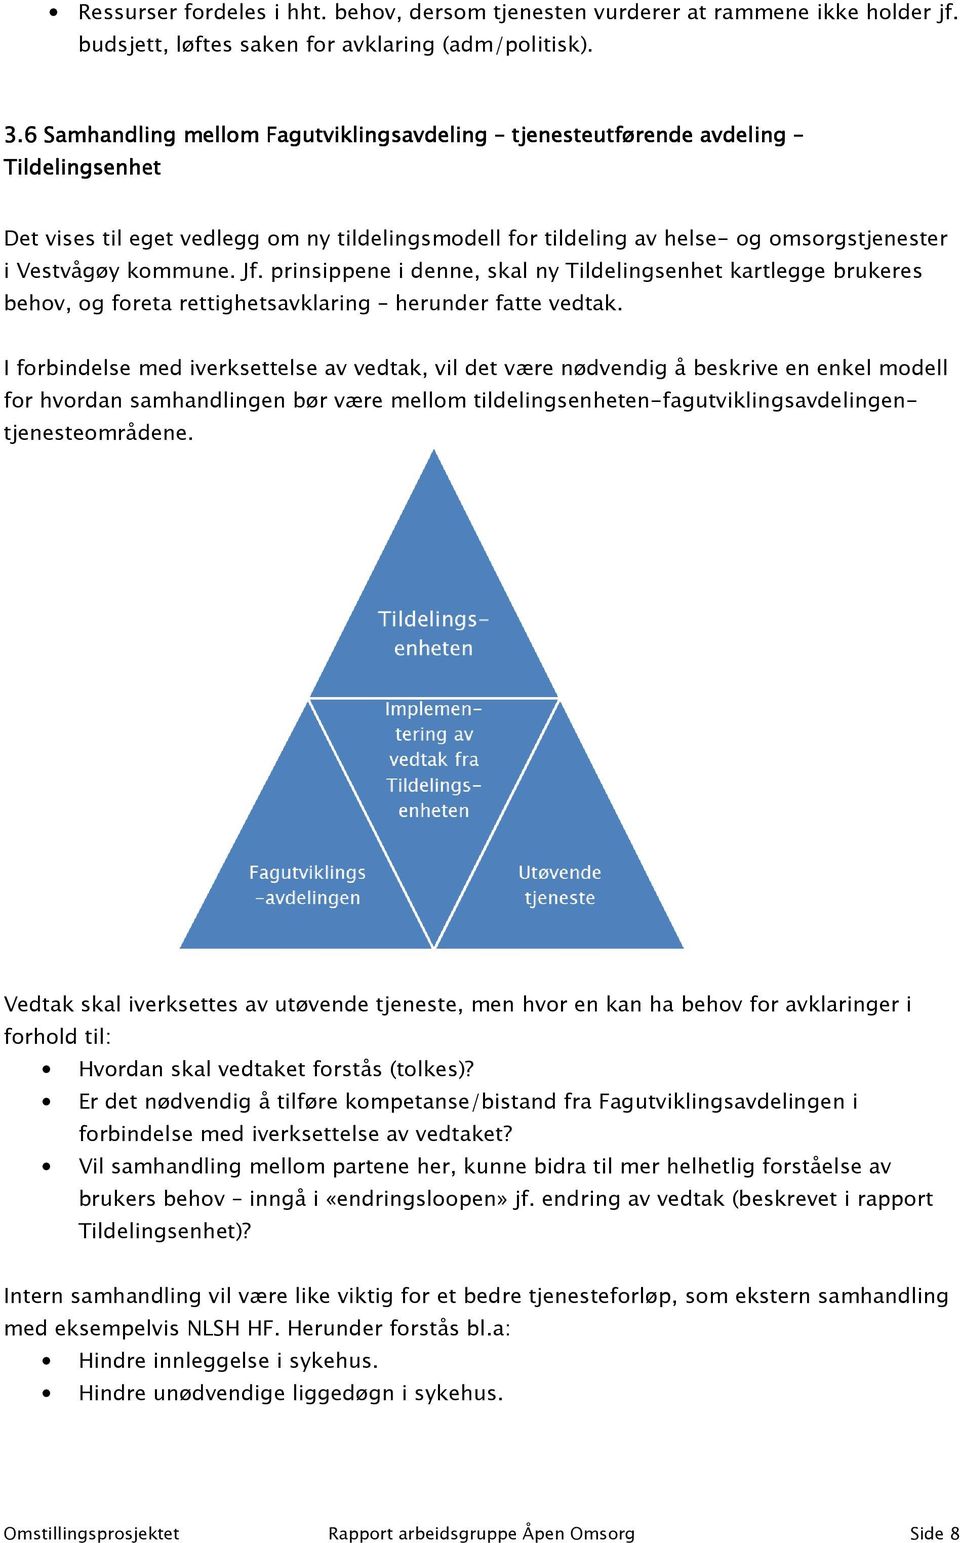 Vestvågøy kommune. Jf. prinsippene i denne, skal ny Tildelingsenhet kartlegge brukeres behov, og foreta rettighetsavklaring herunder fatte vedtak.